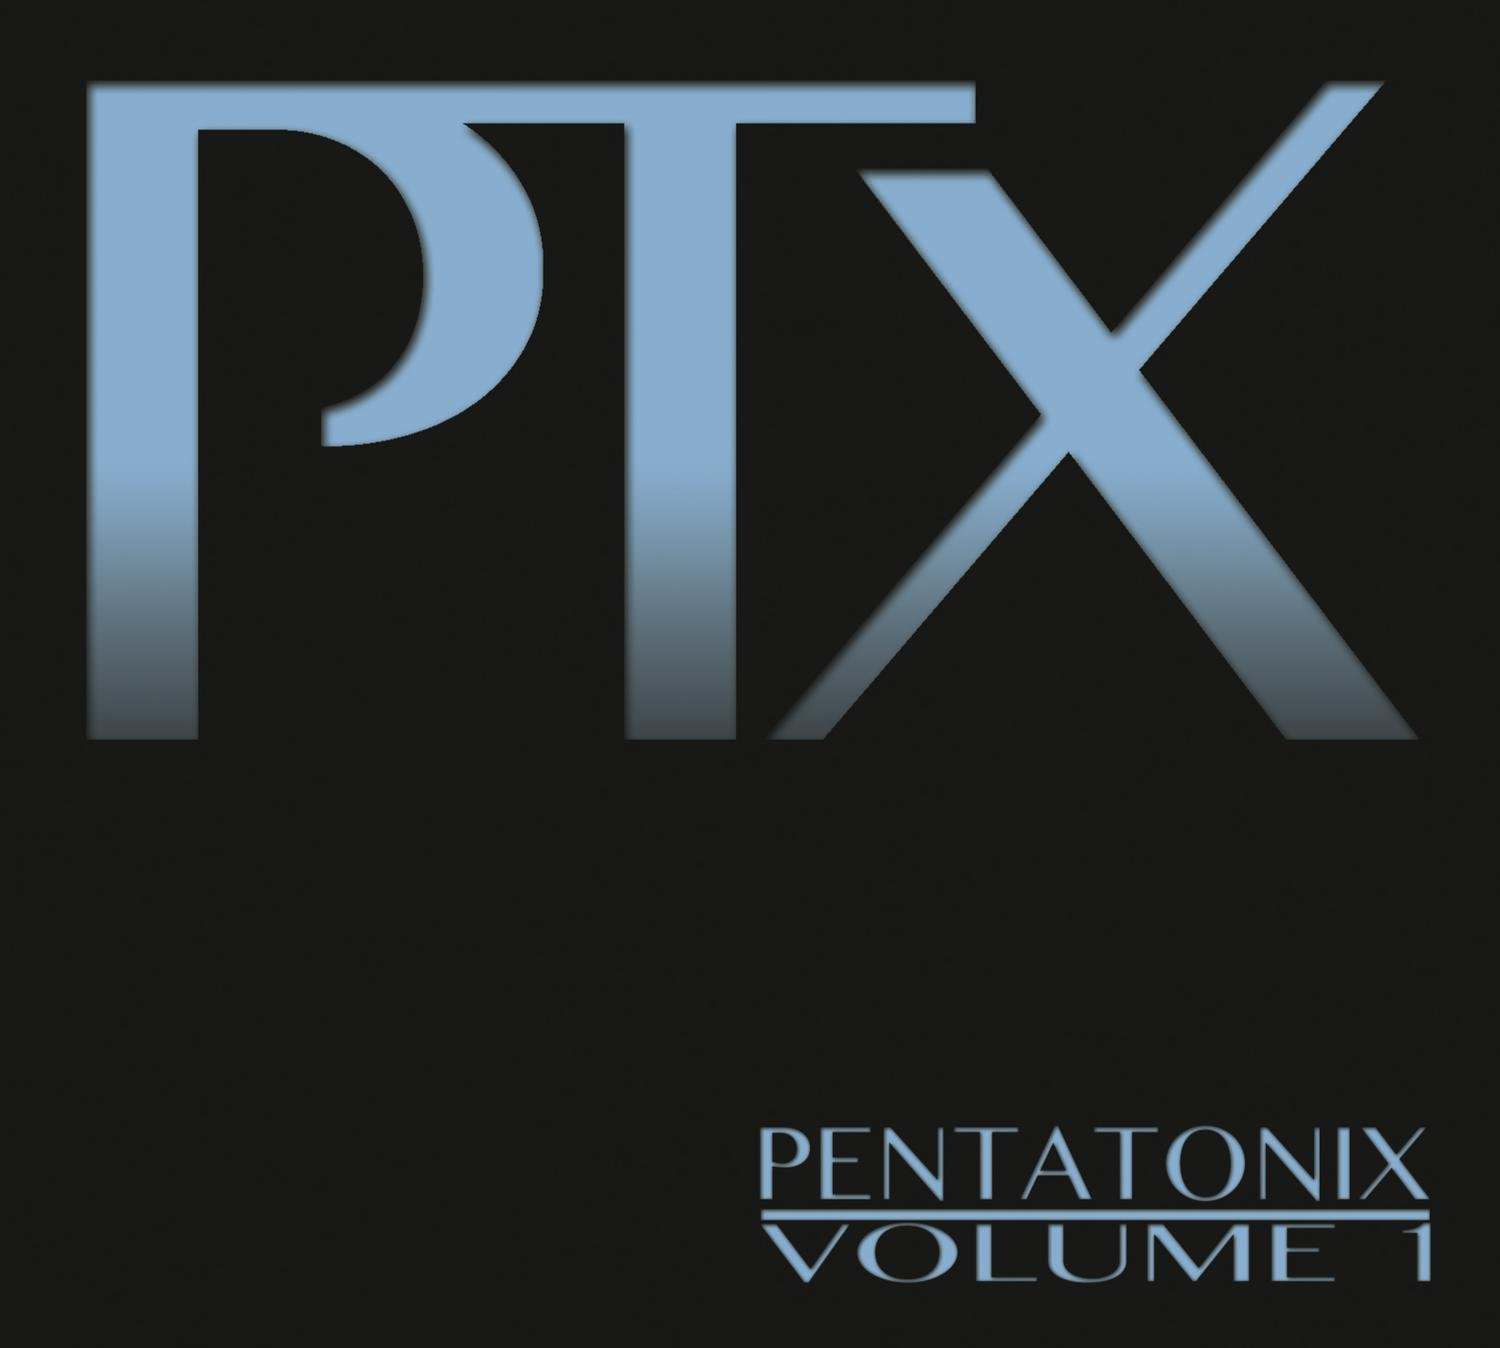 Pentatonix - PTX, Vol. 1 (2012/2014) [Qobuz FLAC 24bit/44,1kHz]